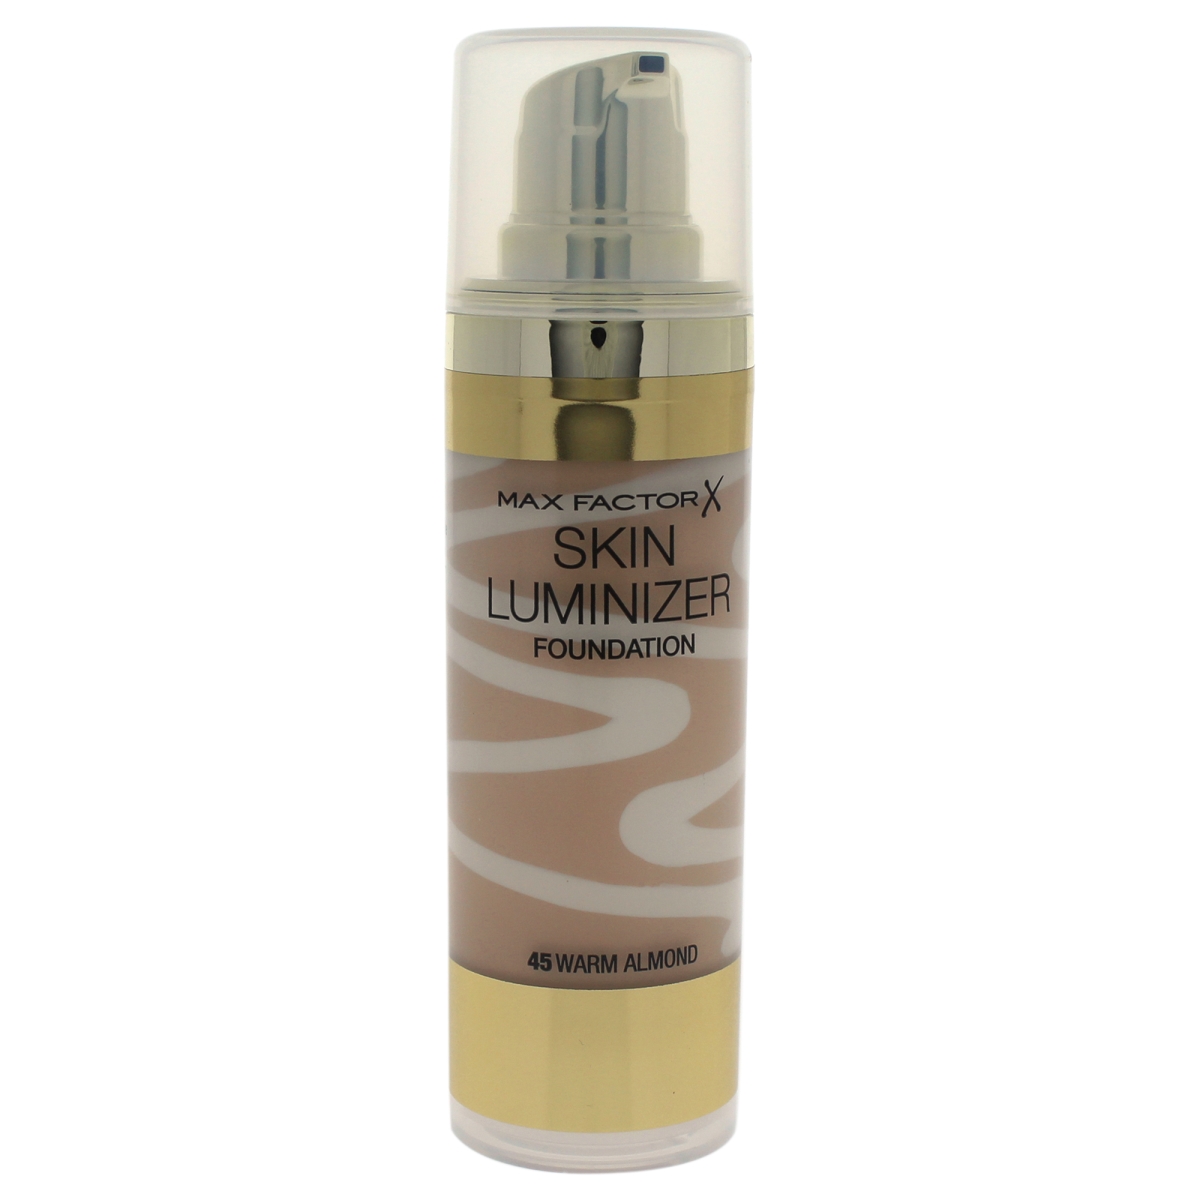 W-c-11235 30 Ml No. 45 Skin Luminizer Foundation - Warm Almond For Women